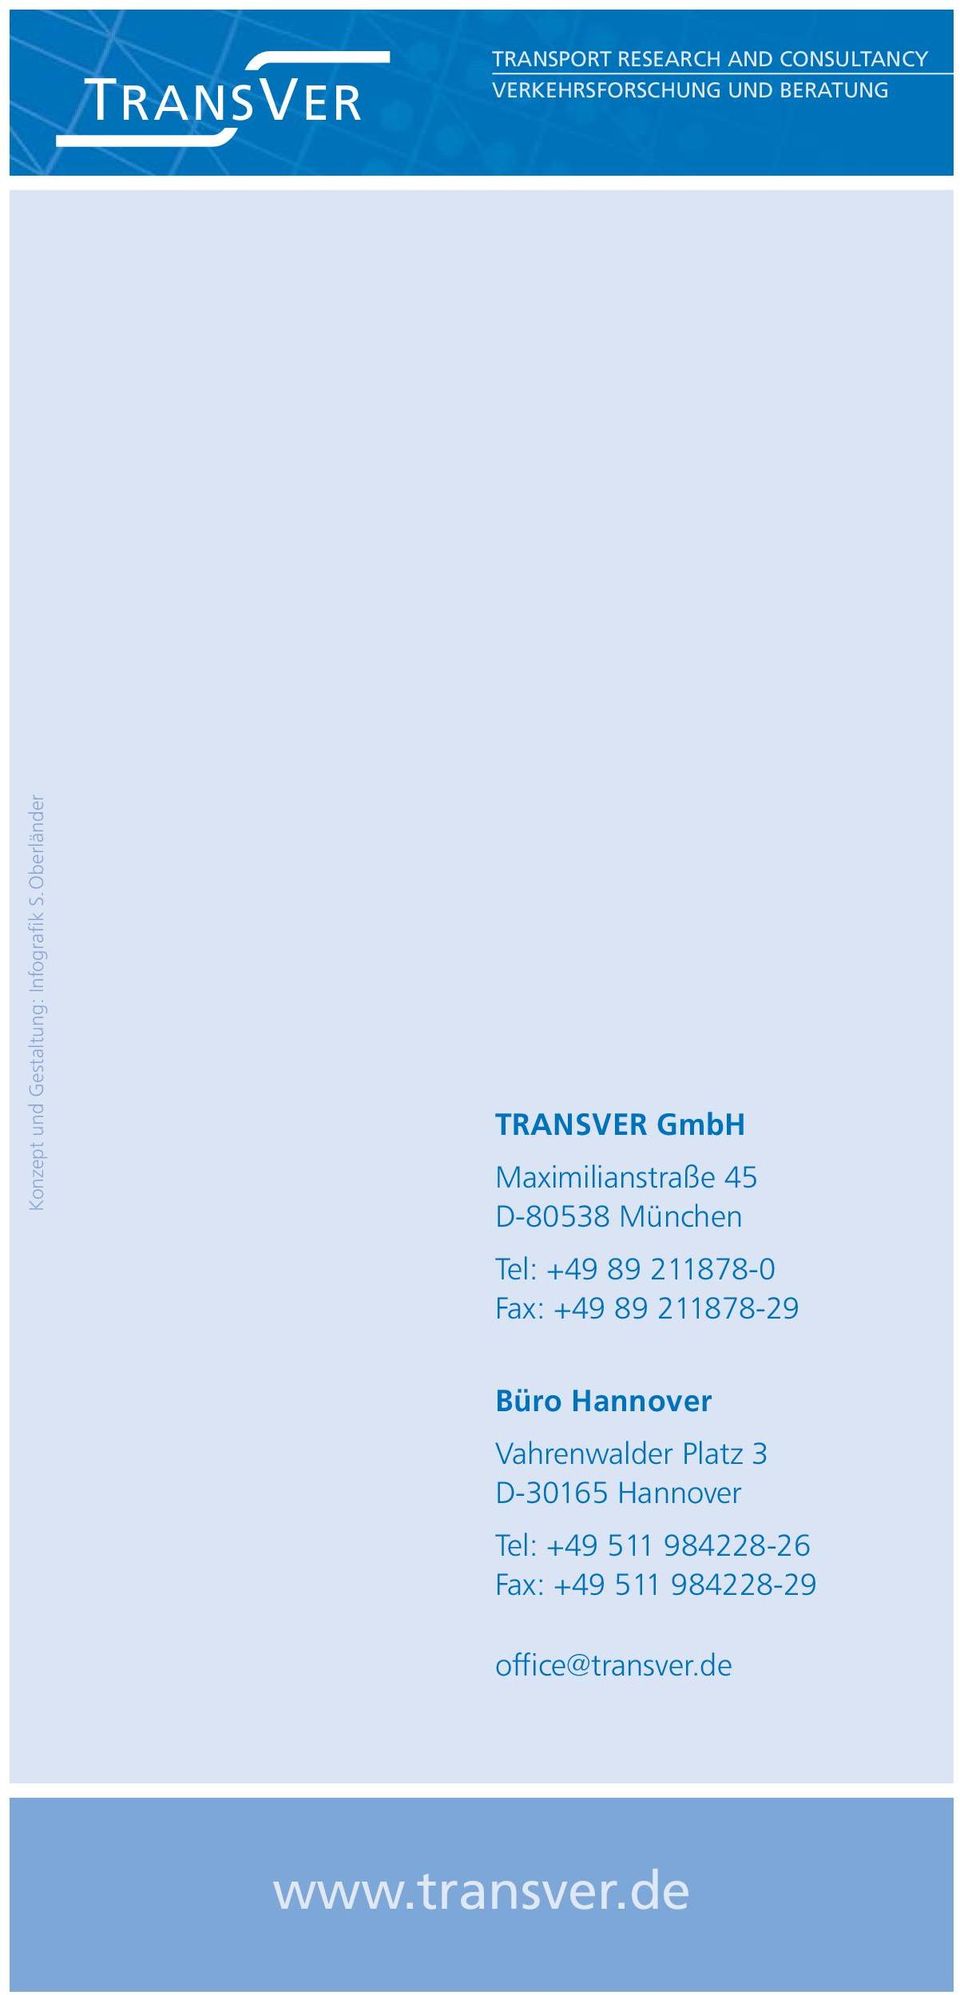 Oberländer TRANSVER GmbH Maximilianstraße 45 D-80538 München Tel: +49 89 211878-0 Fax: